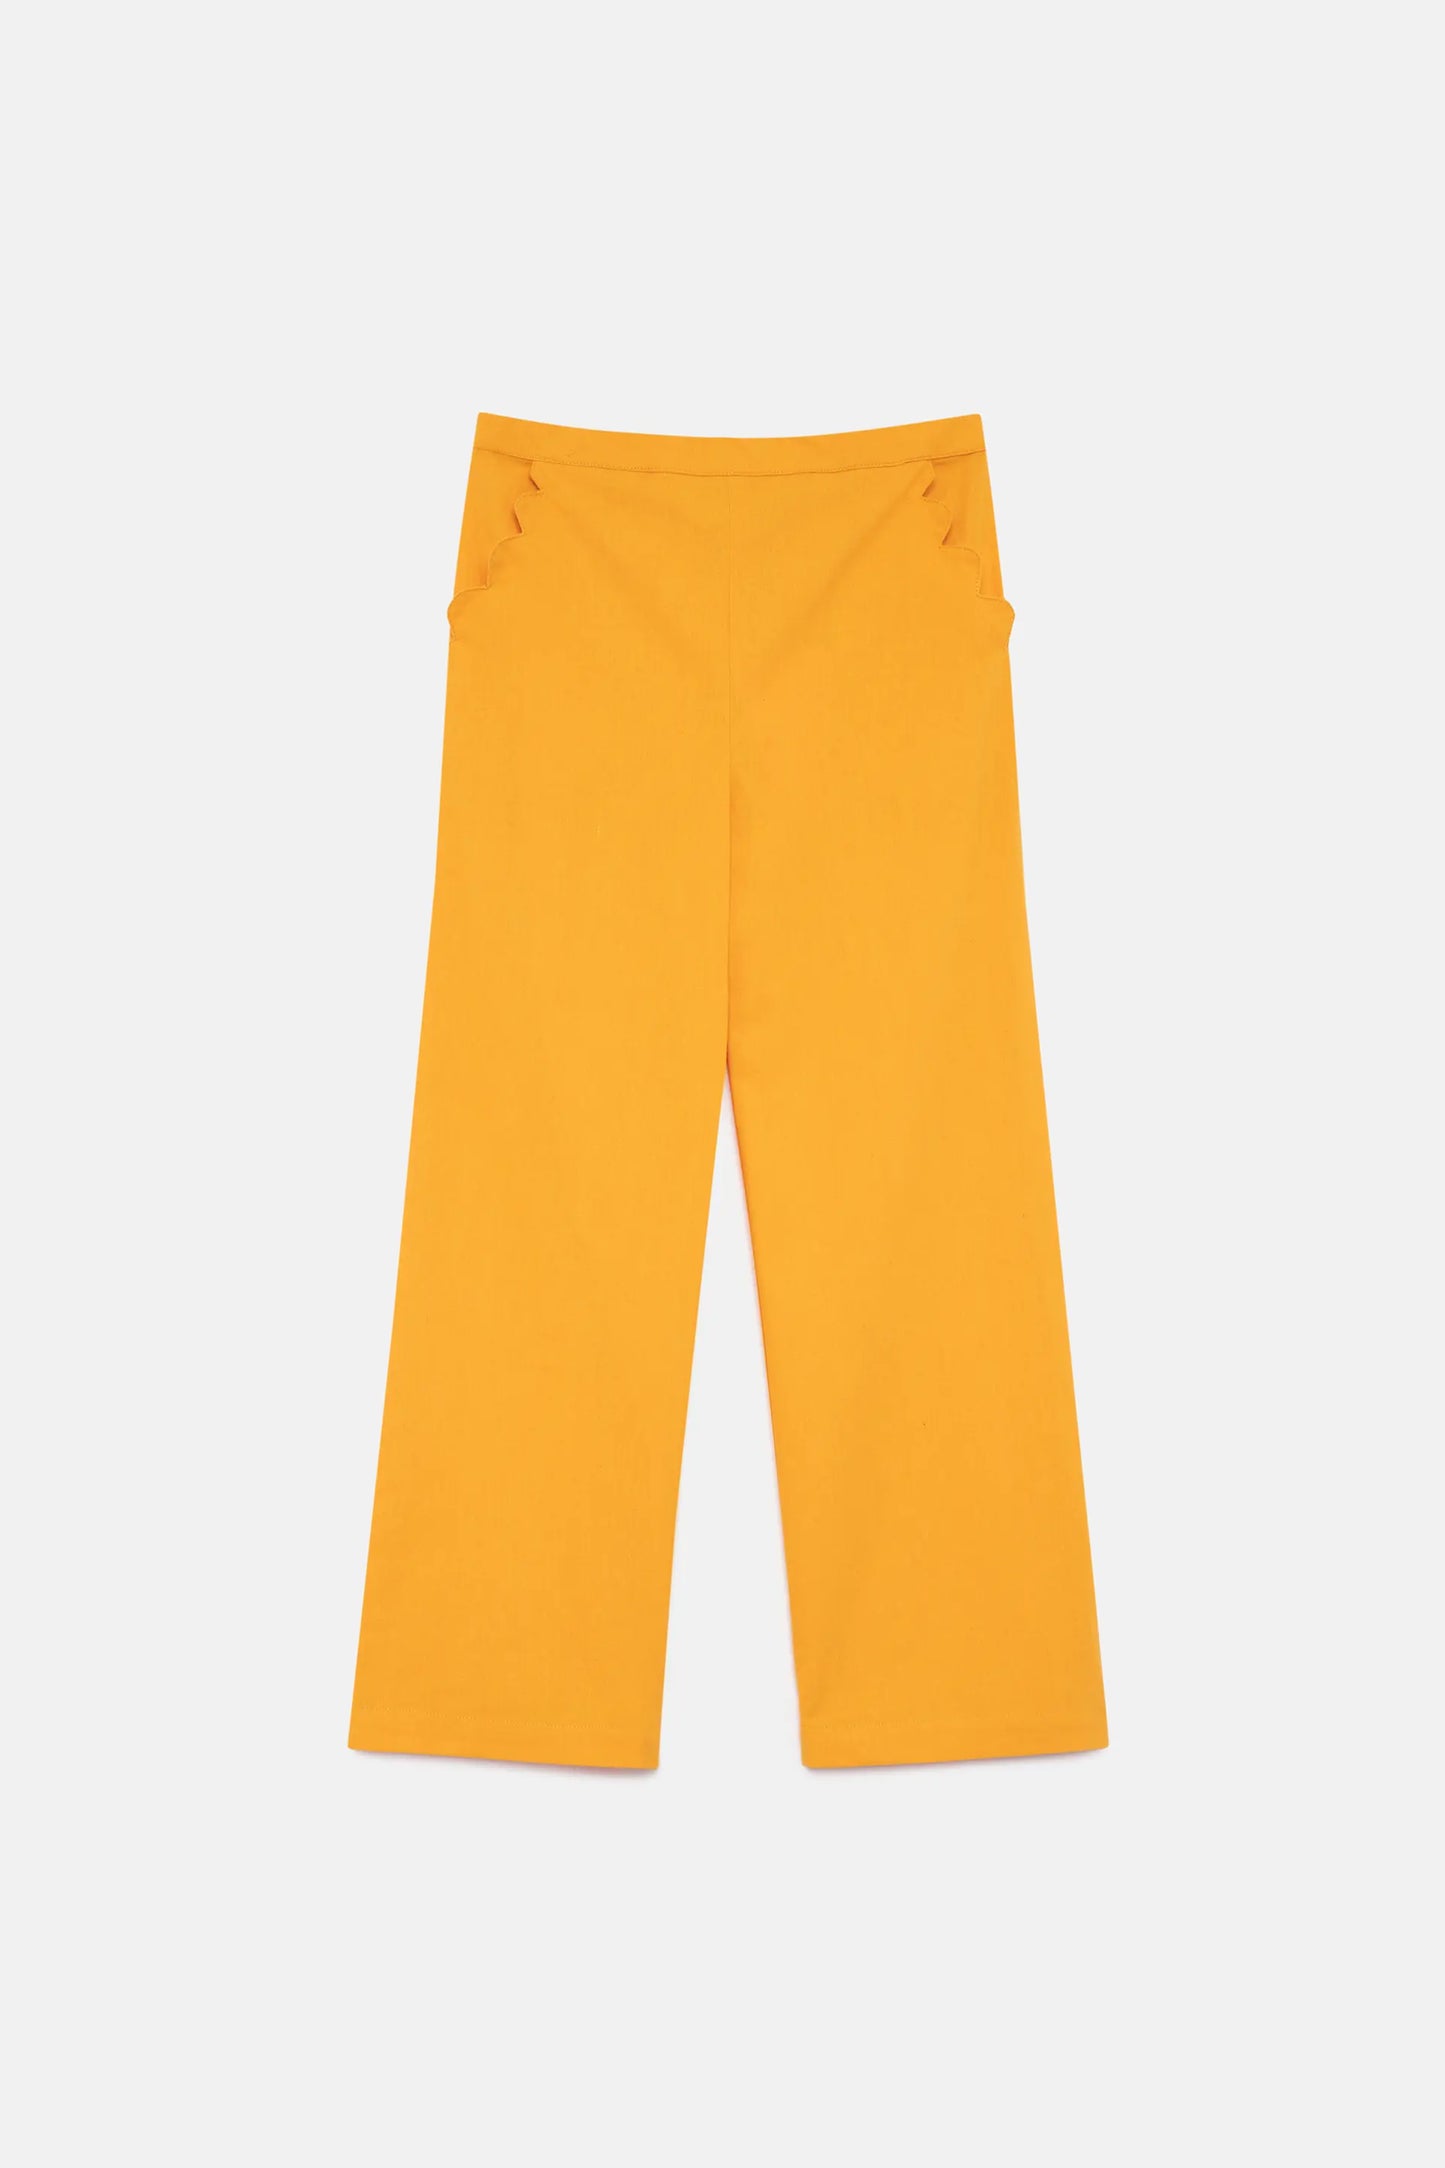 Pantalón de niña recto amarillo